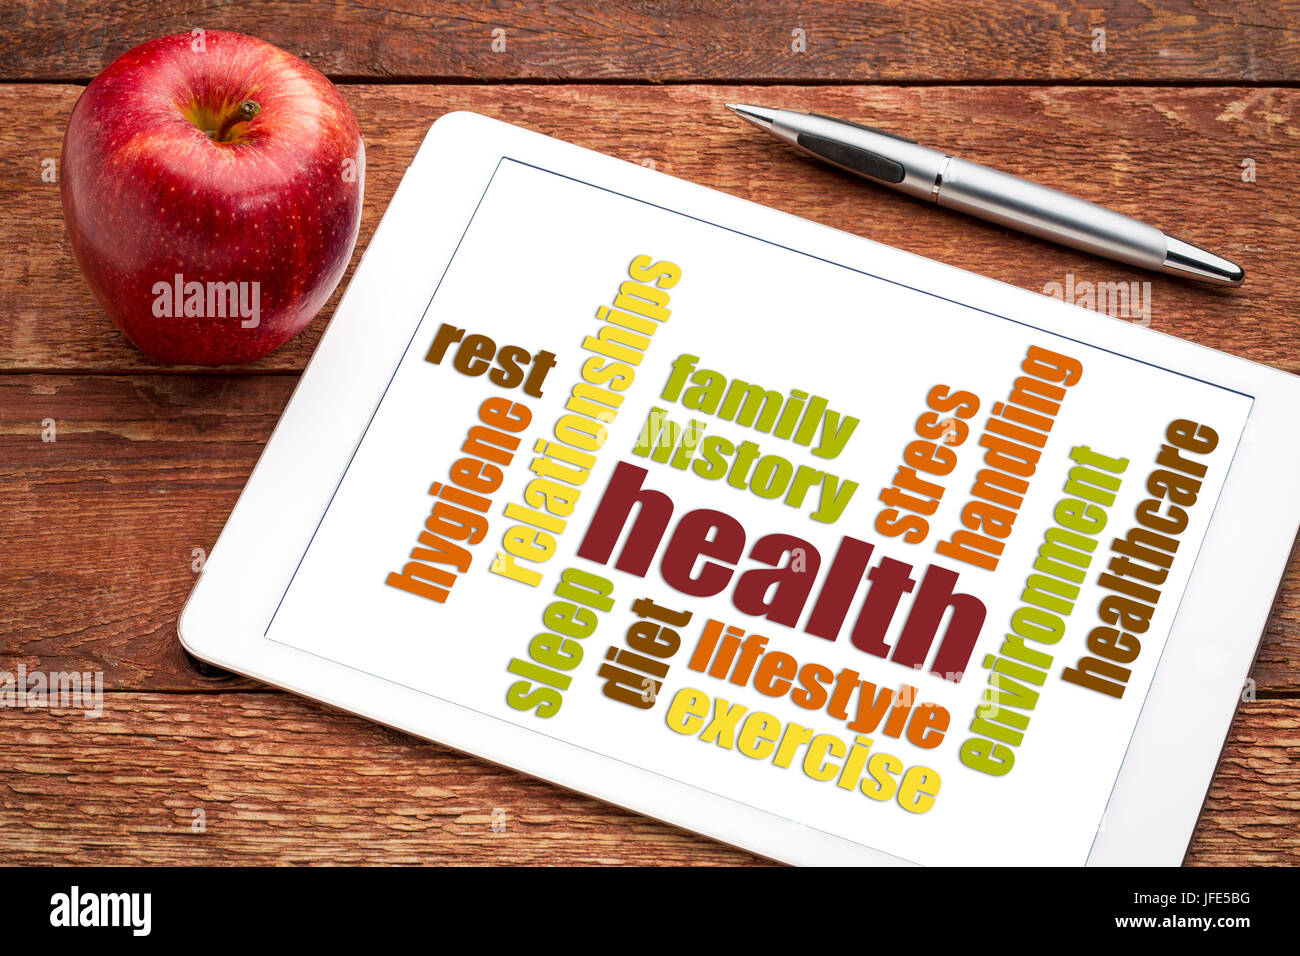 Gesundheitskonzept - Wortwolke auf einem digitalen Tablet mit Apfel Stockfoto